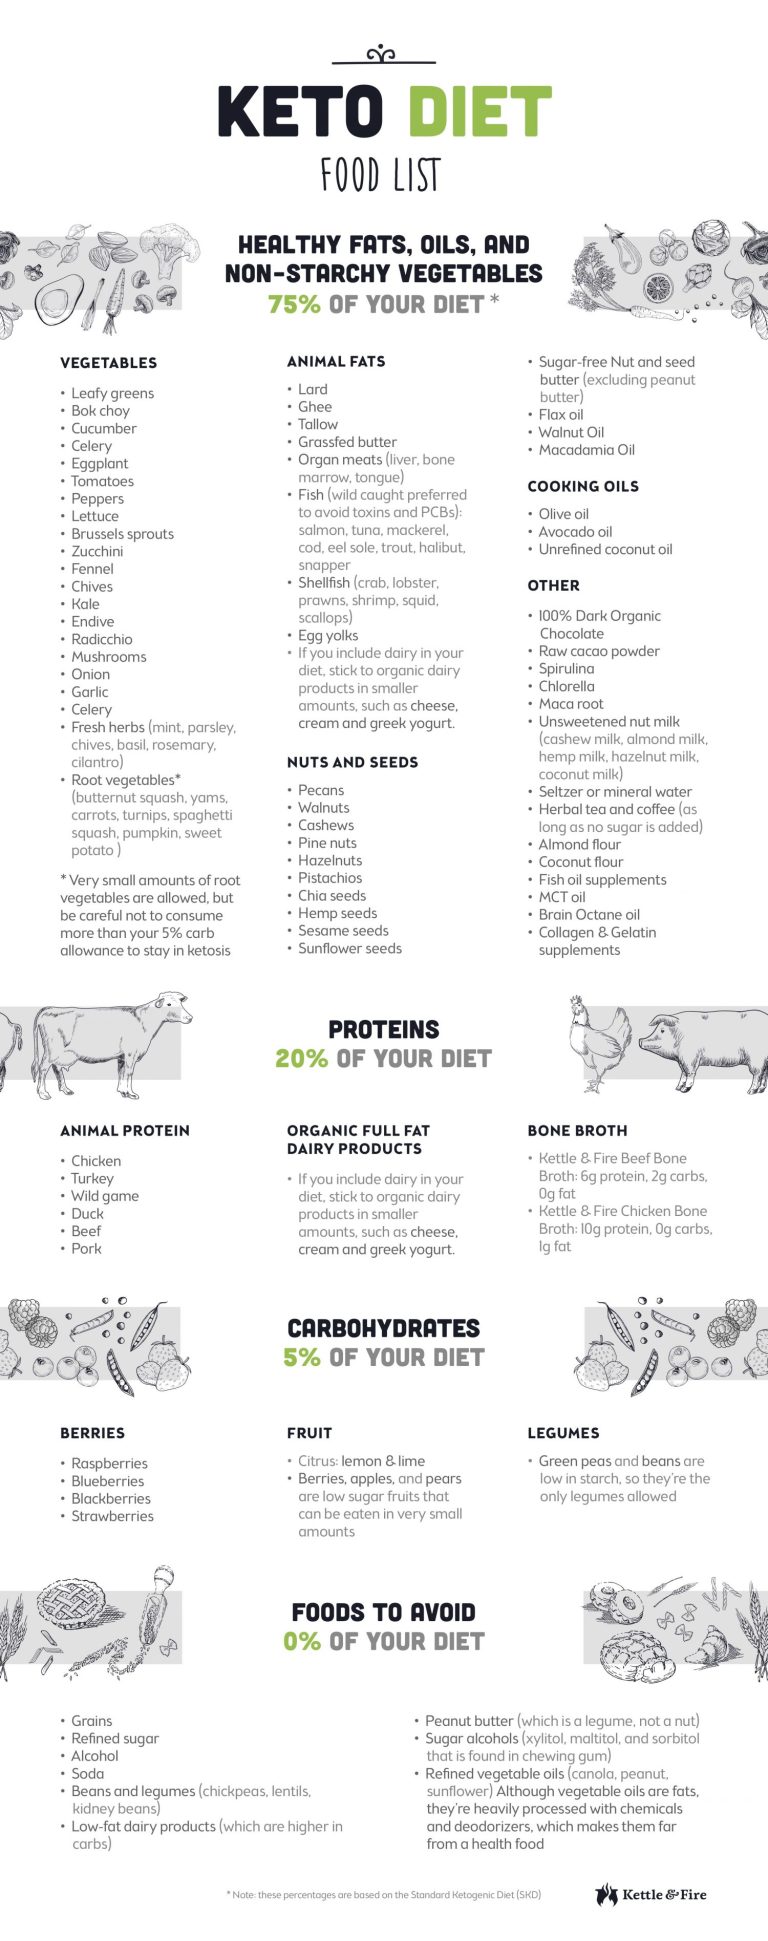 Keto-Diet-Food-List-Infographic-e1496168968131.jpg